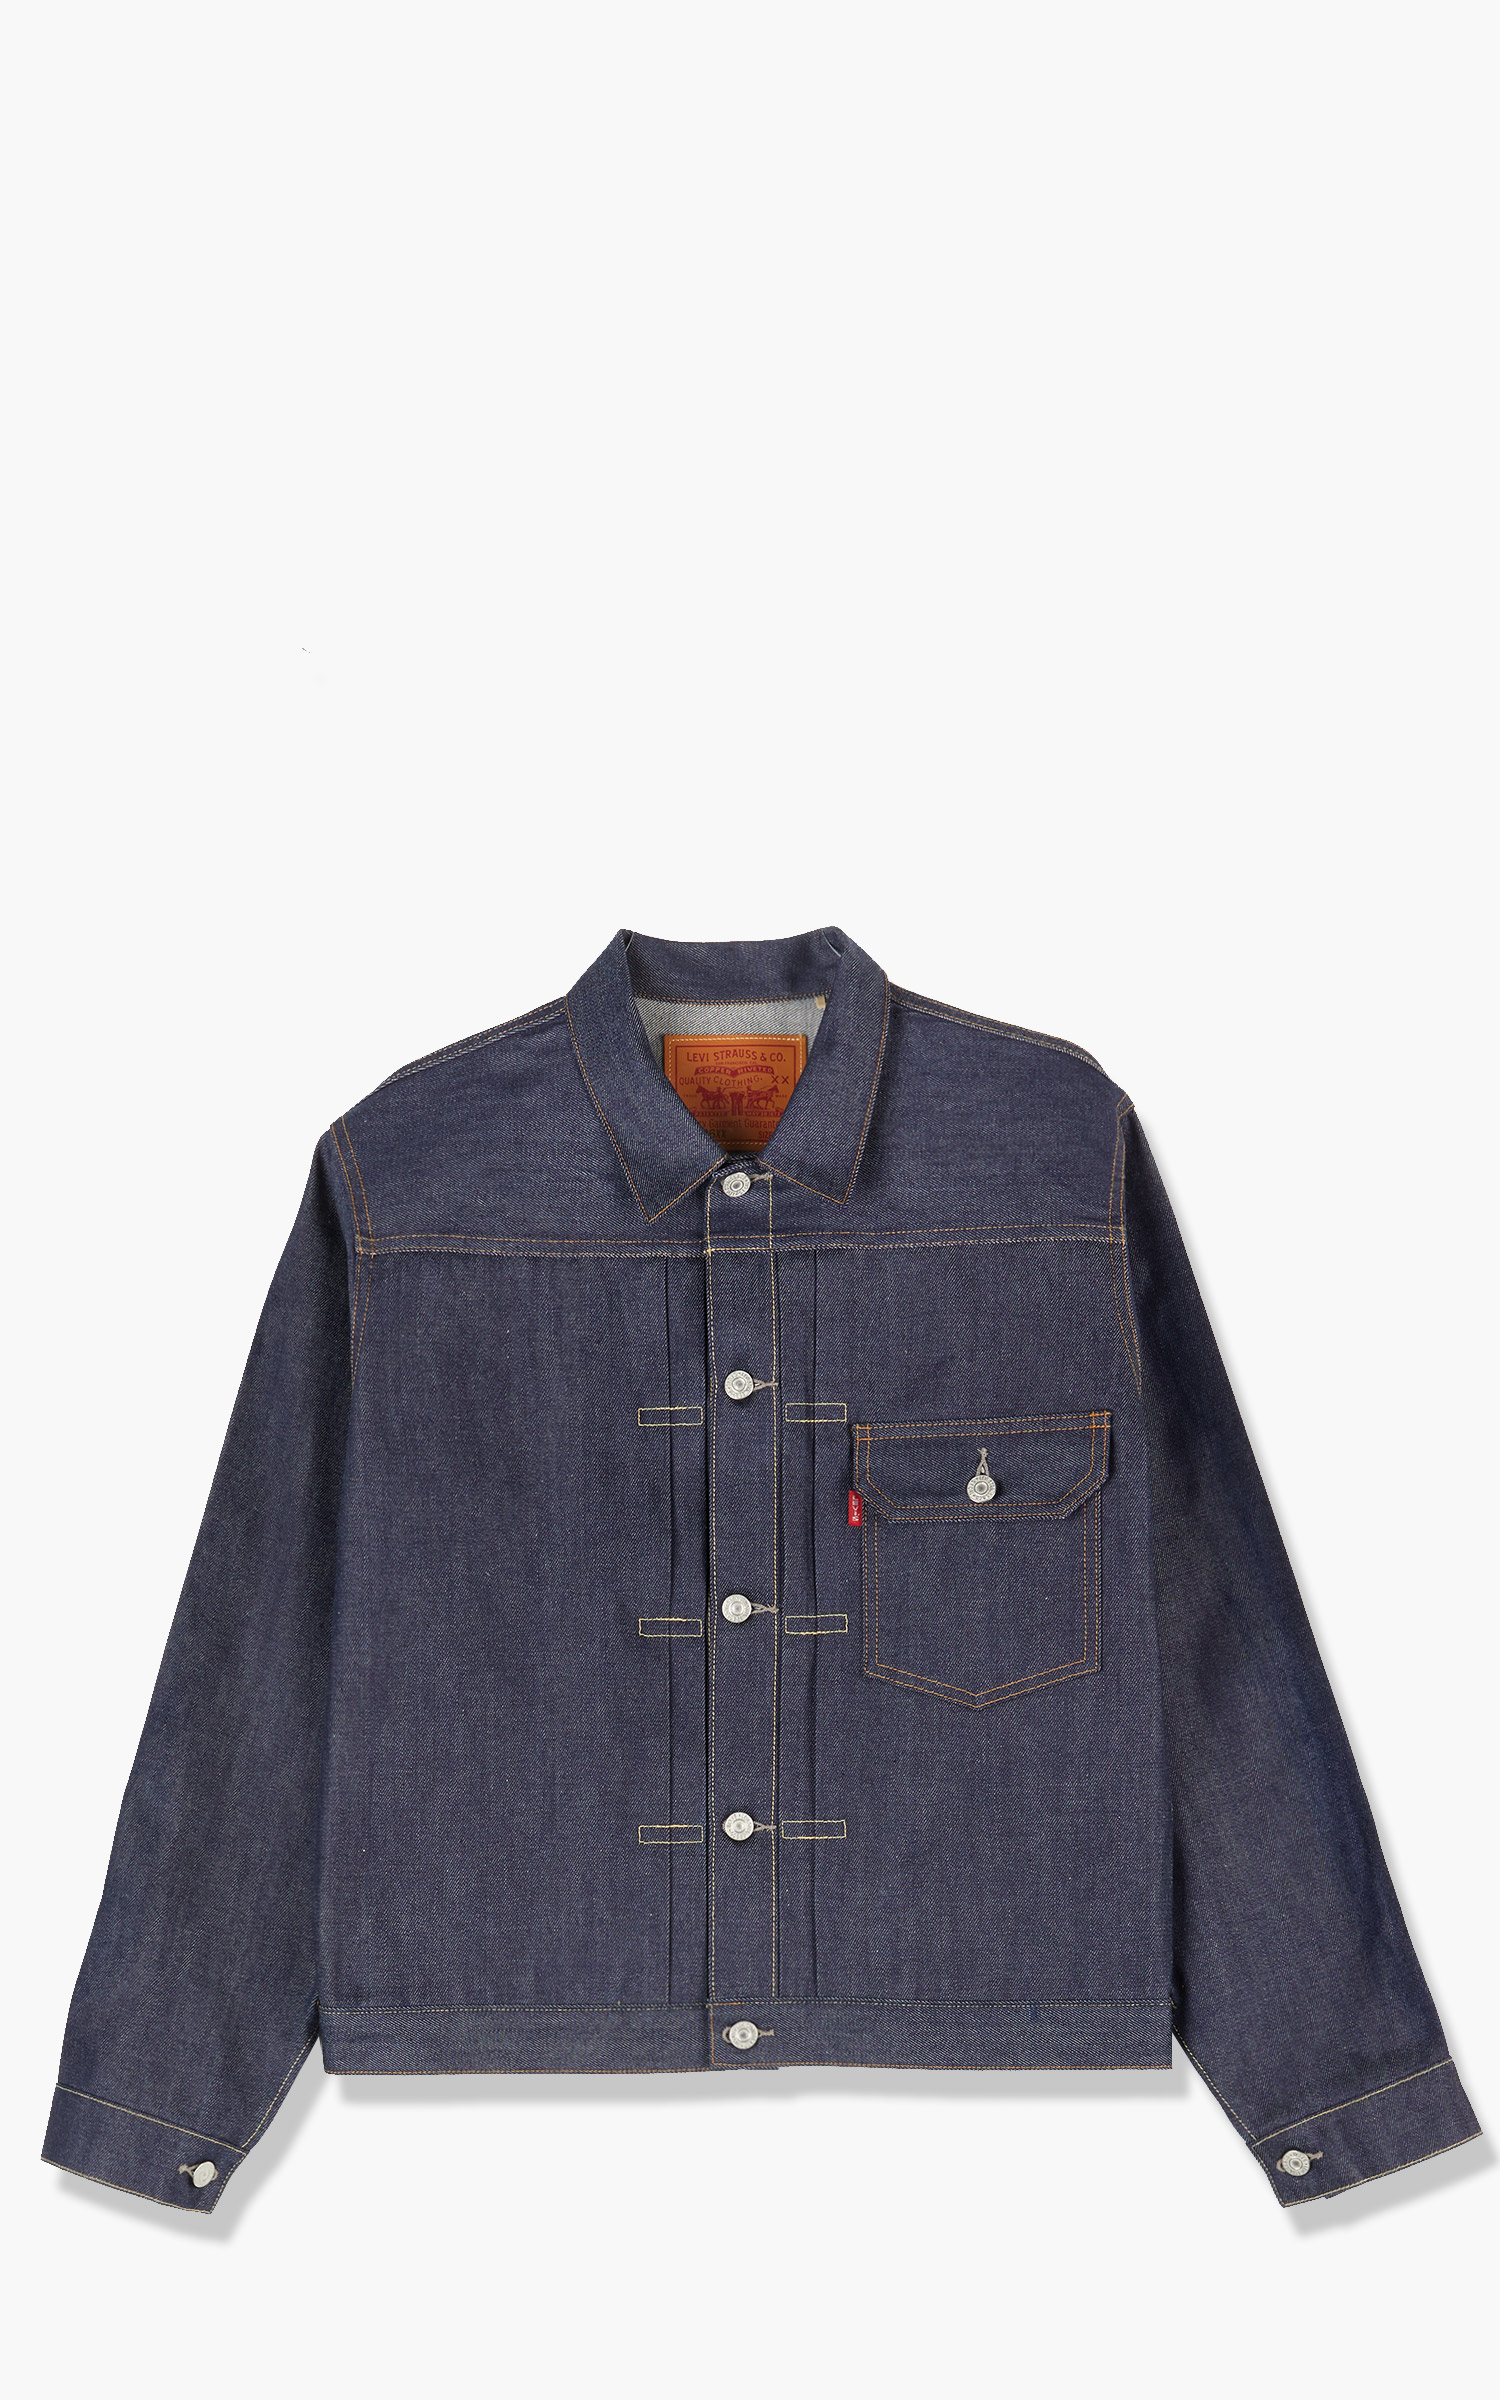 Levi's® Vintage Clothing 1936 Type I Jacket Rigid